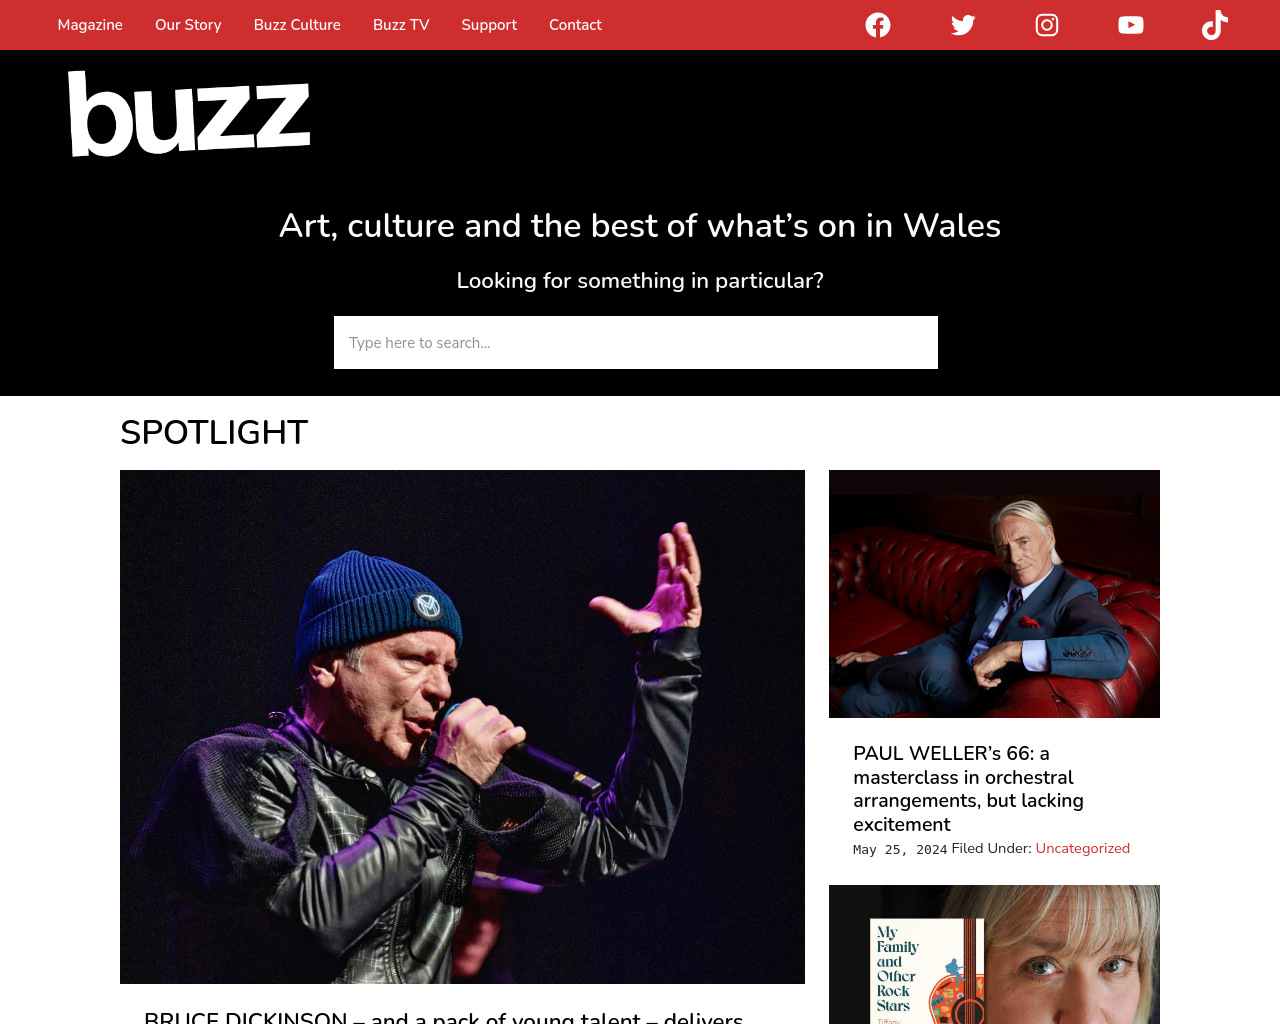 buzzmag.co.uk